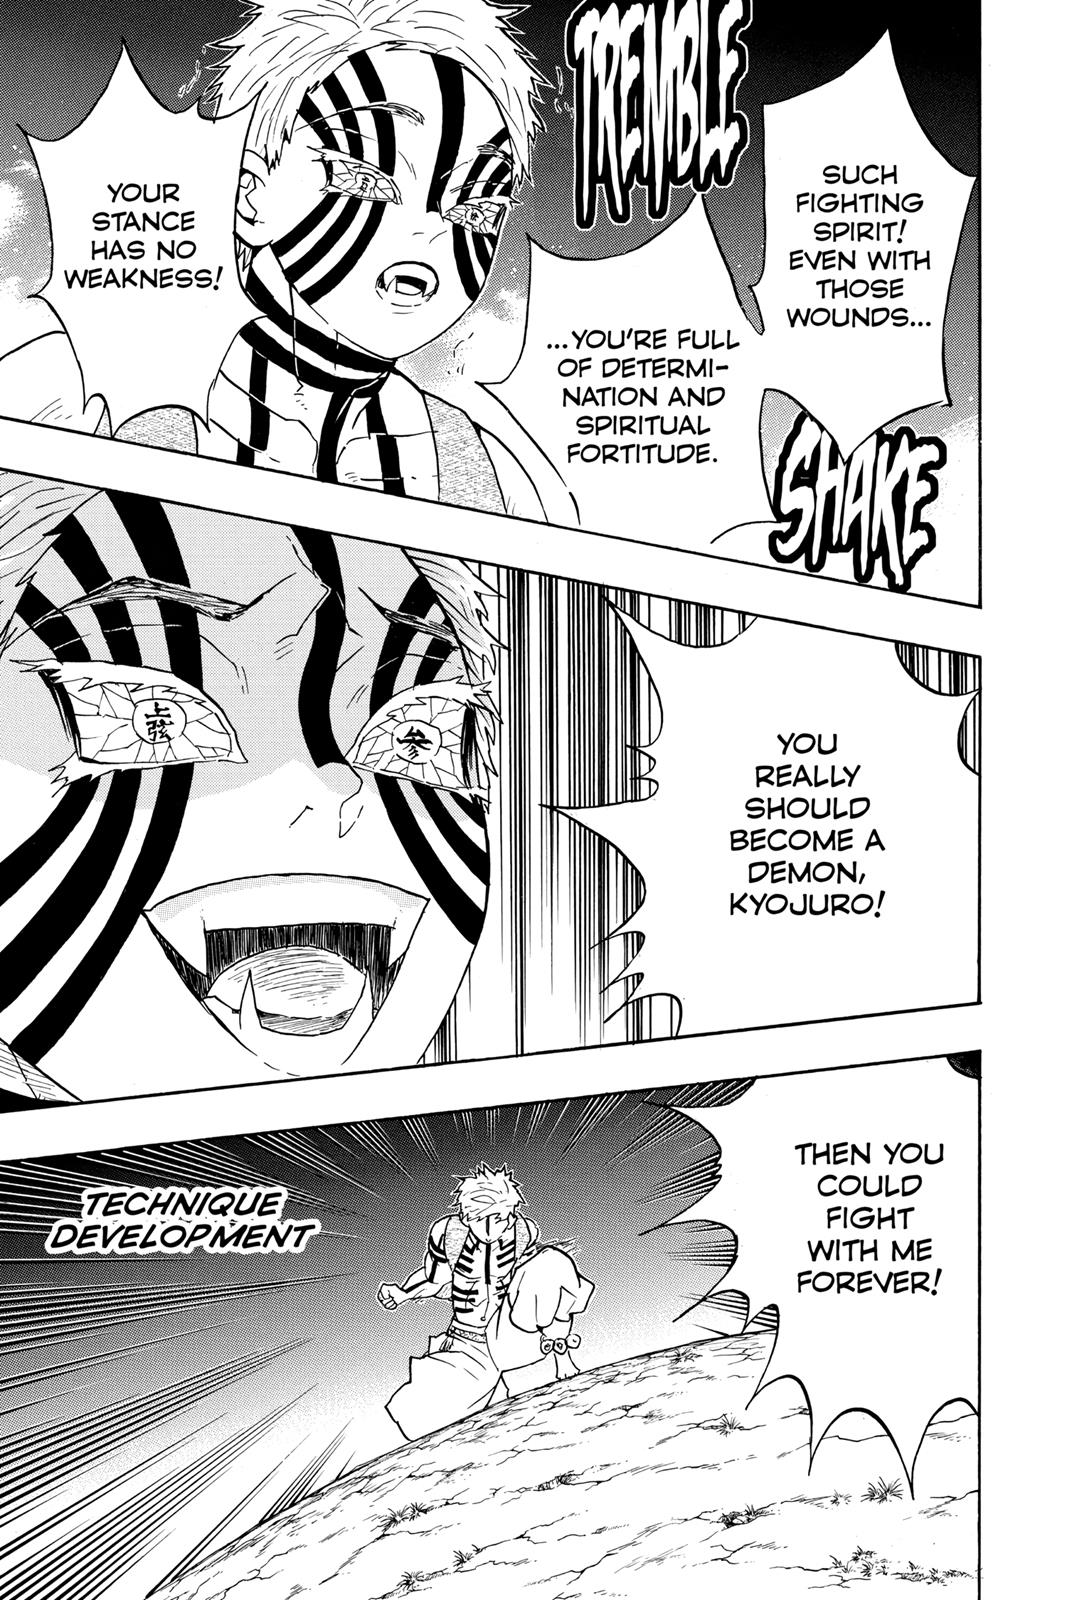 Demon Slayer Manga Manga Chapter - 64 - image 6